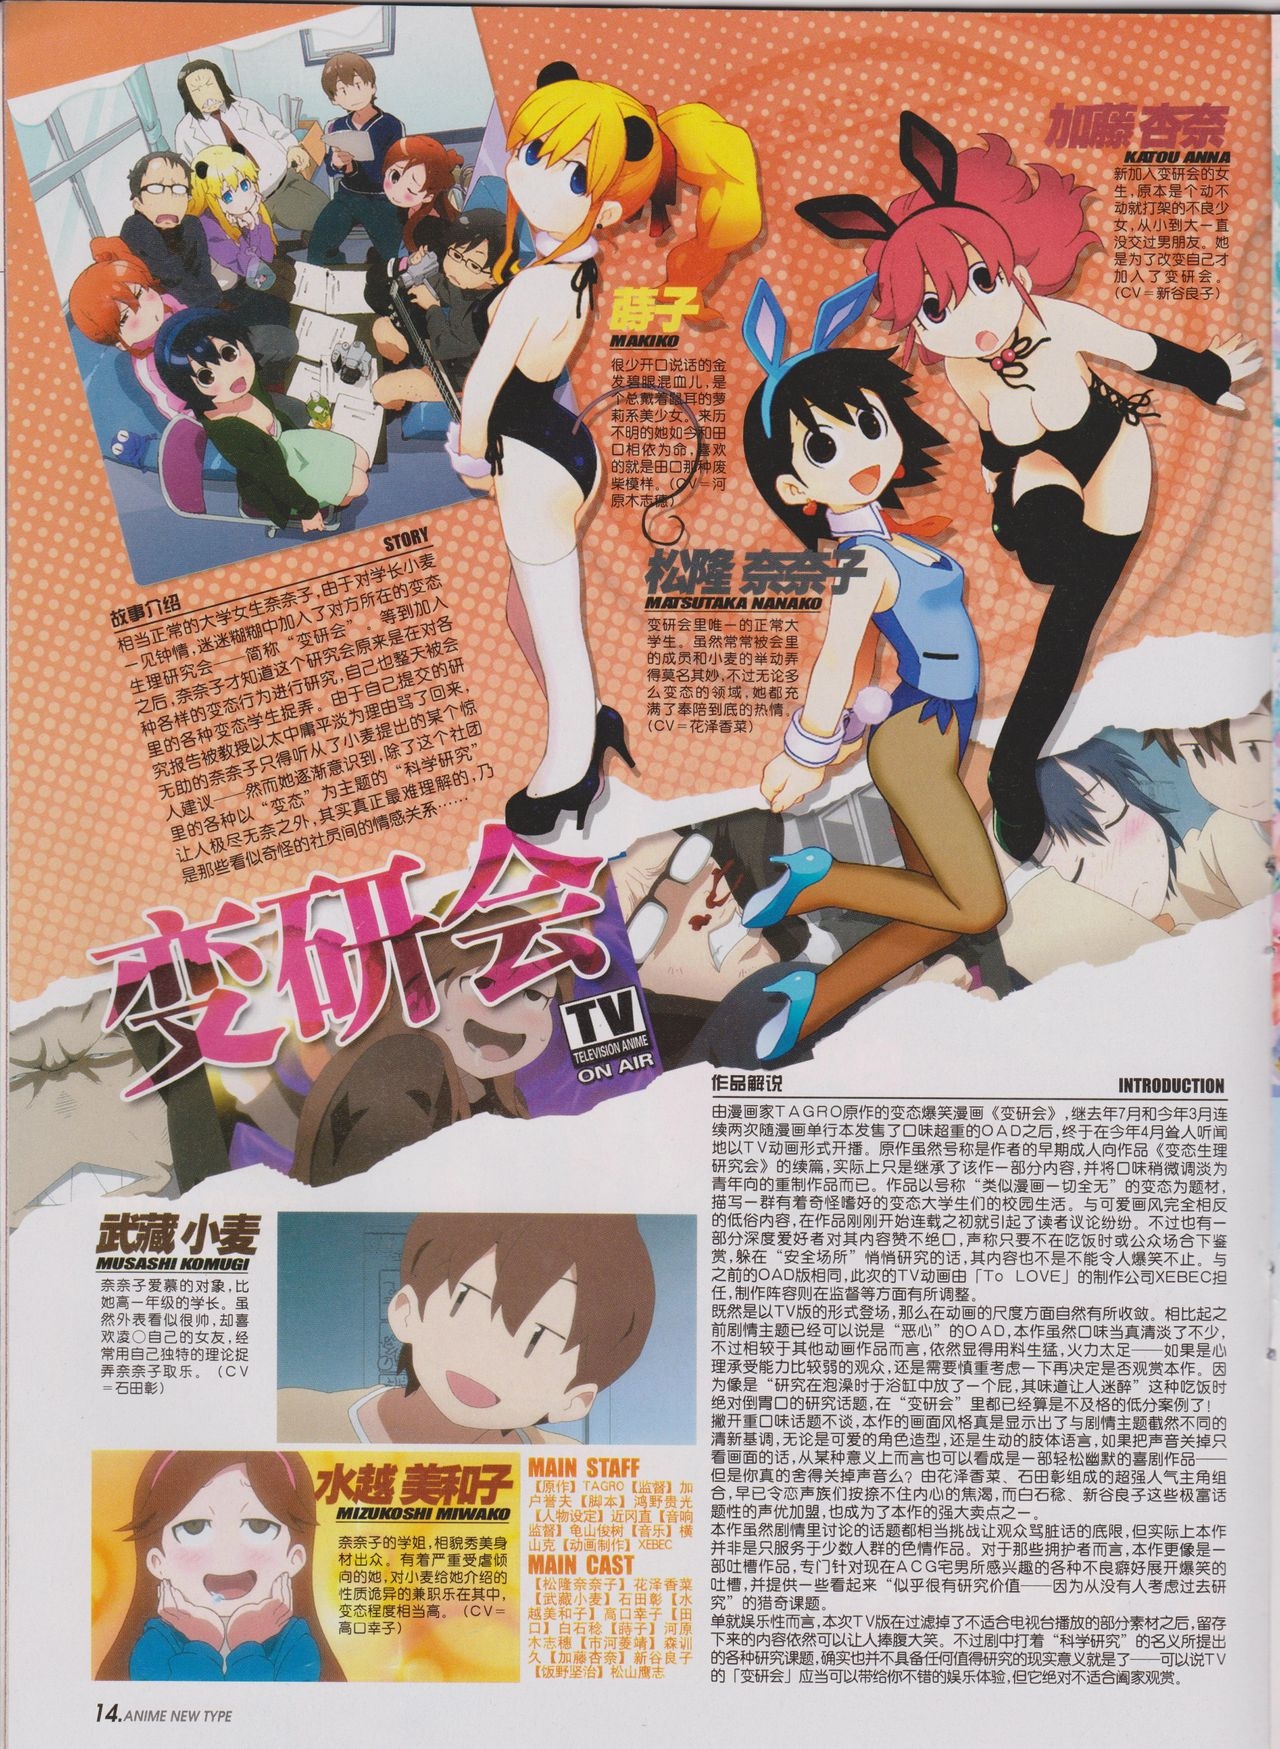 Anime New Type Vol.100 15